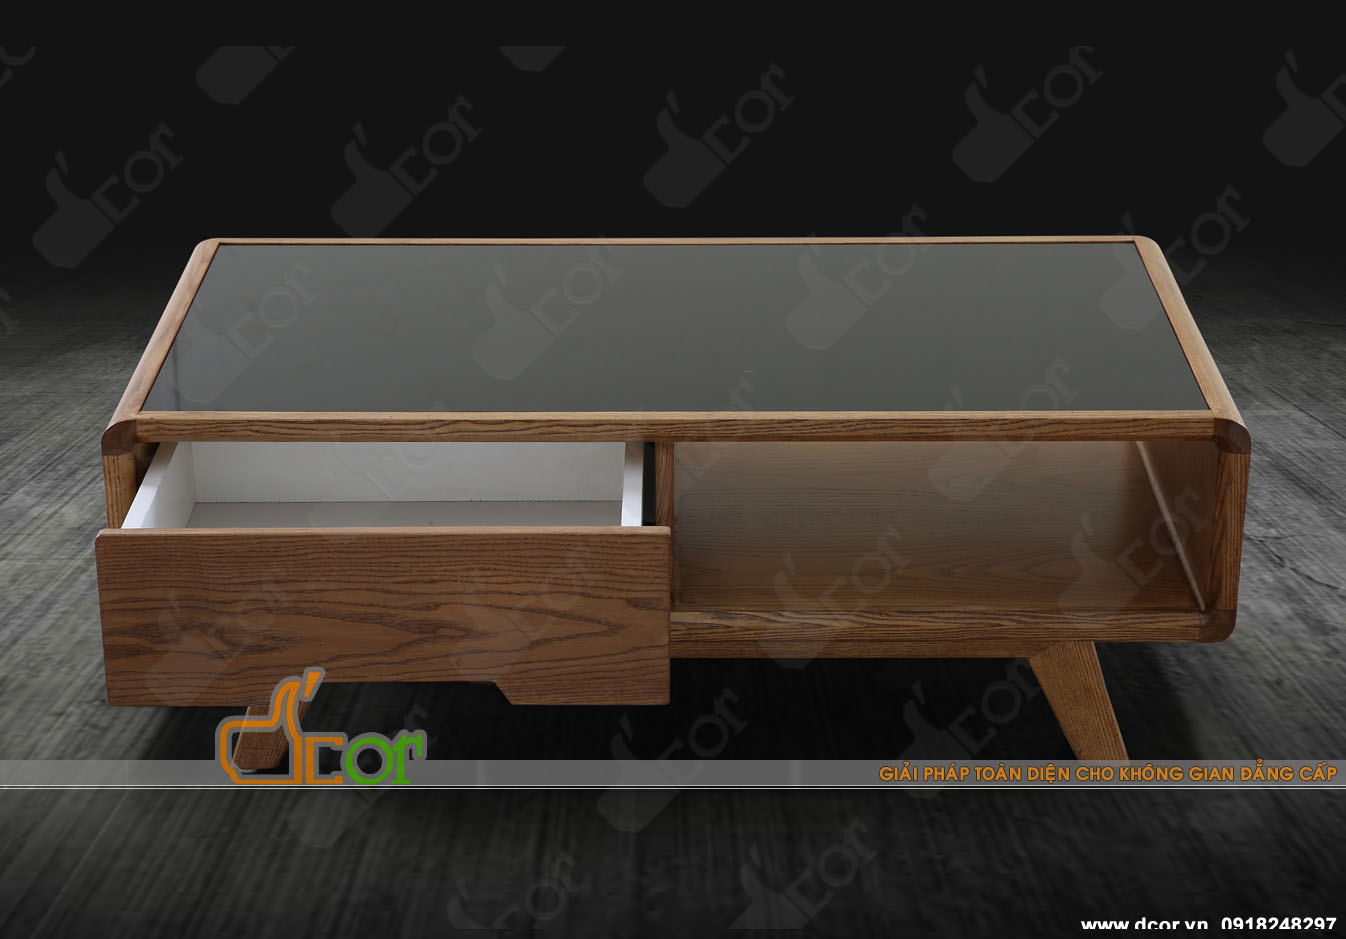 Mẫu bàn trà gỗ tuyệt vời hứa hẹn sẽ thay đổi hoàn toàn không gian nội thất của bạn > mau-ban-tra-bt66